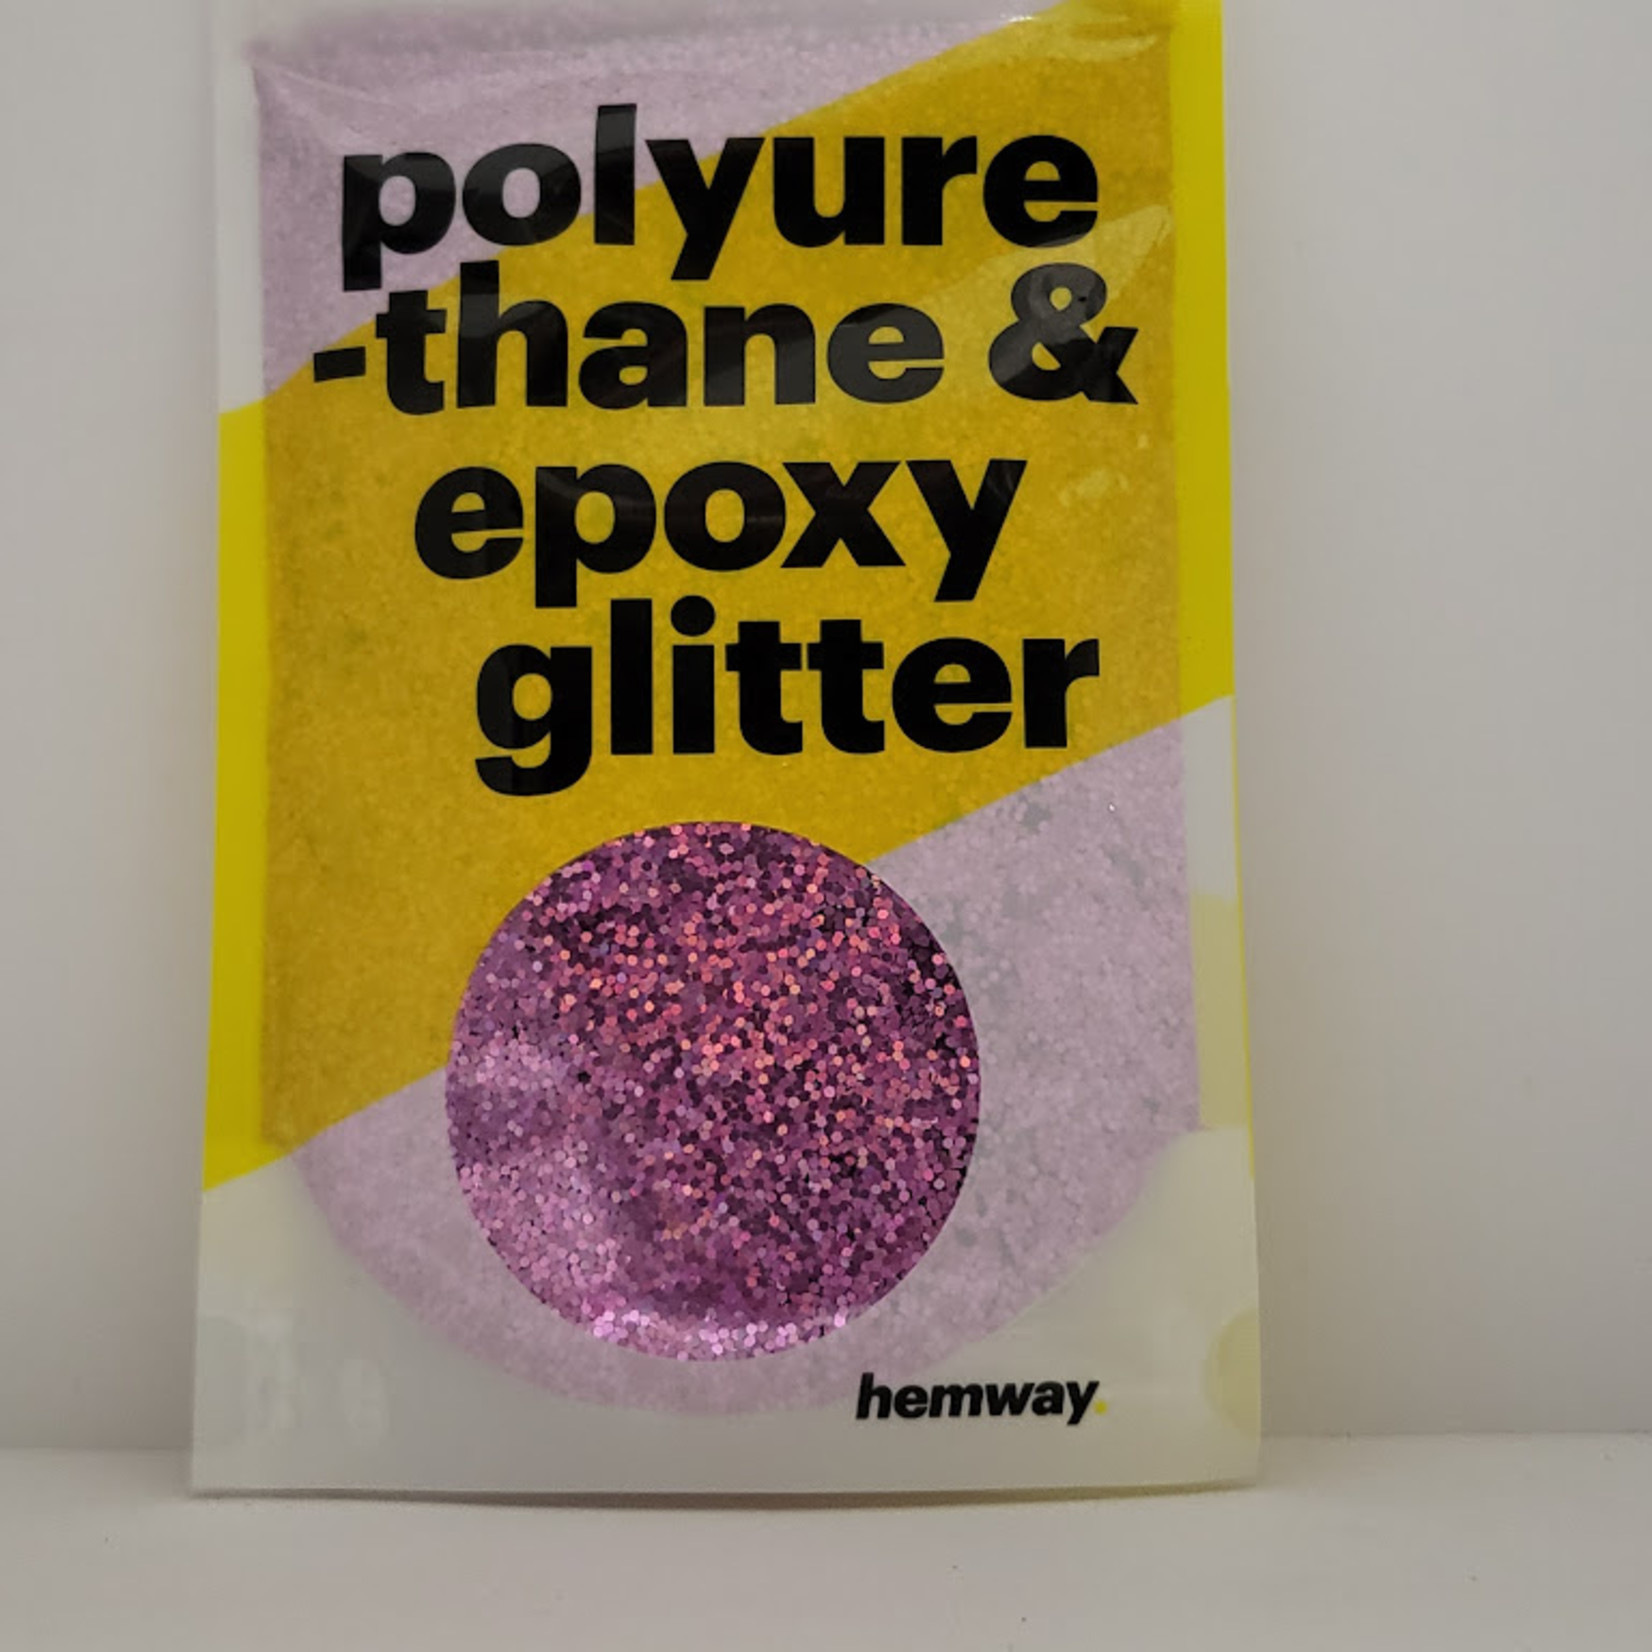 Hemway - polyurethane & epoxy glitter